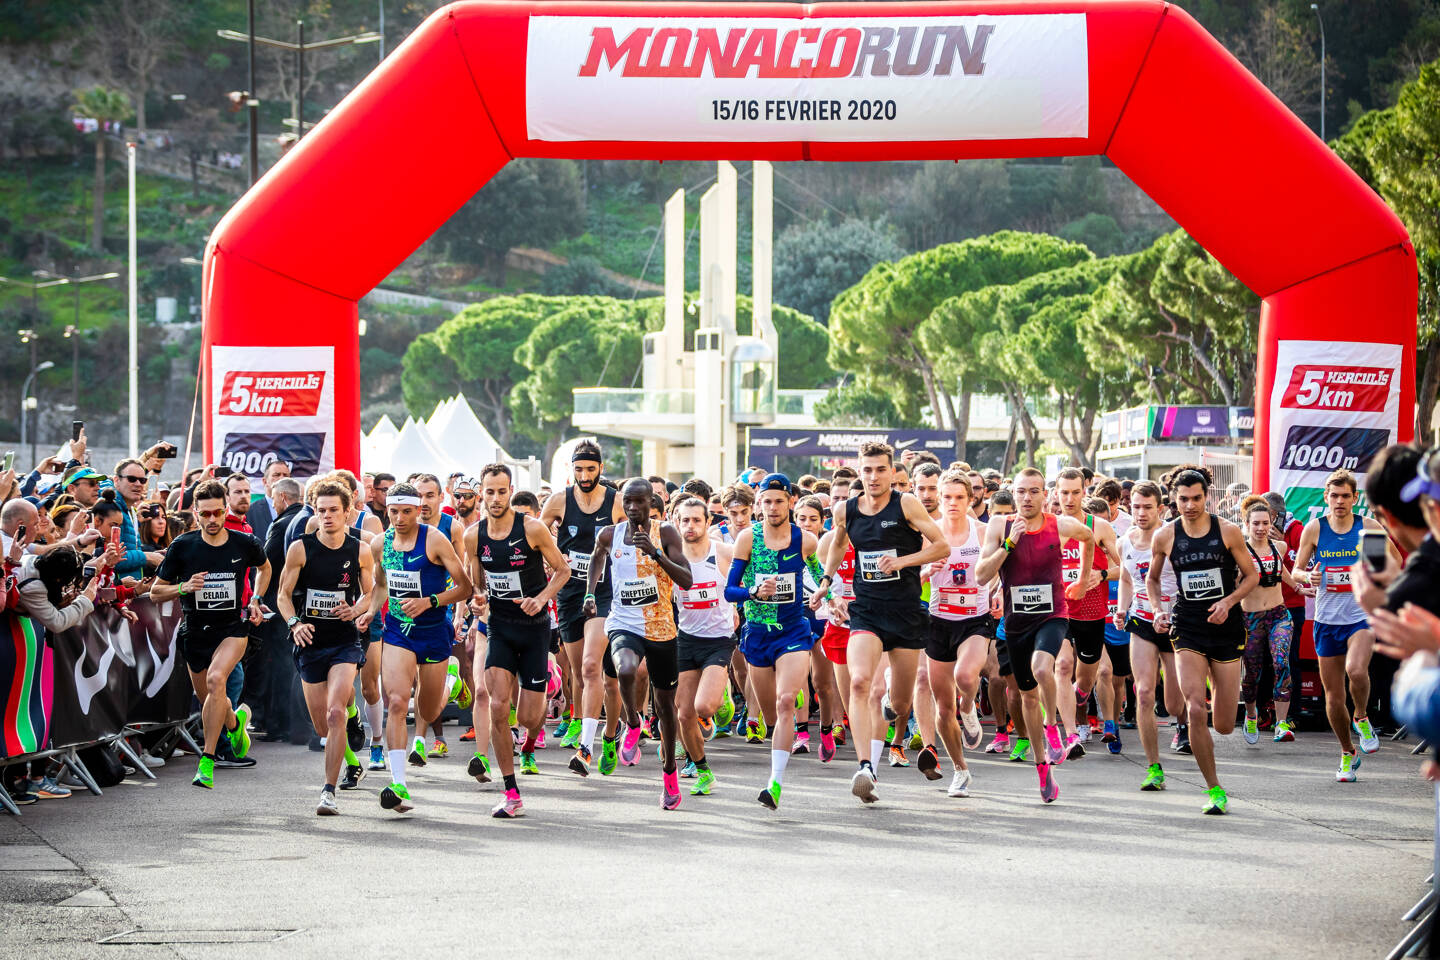 Tout ce qu'il faut savoir sur la Monaco Run qui aura lieu en février